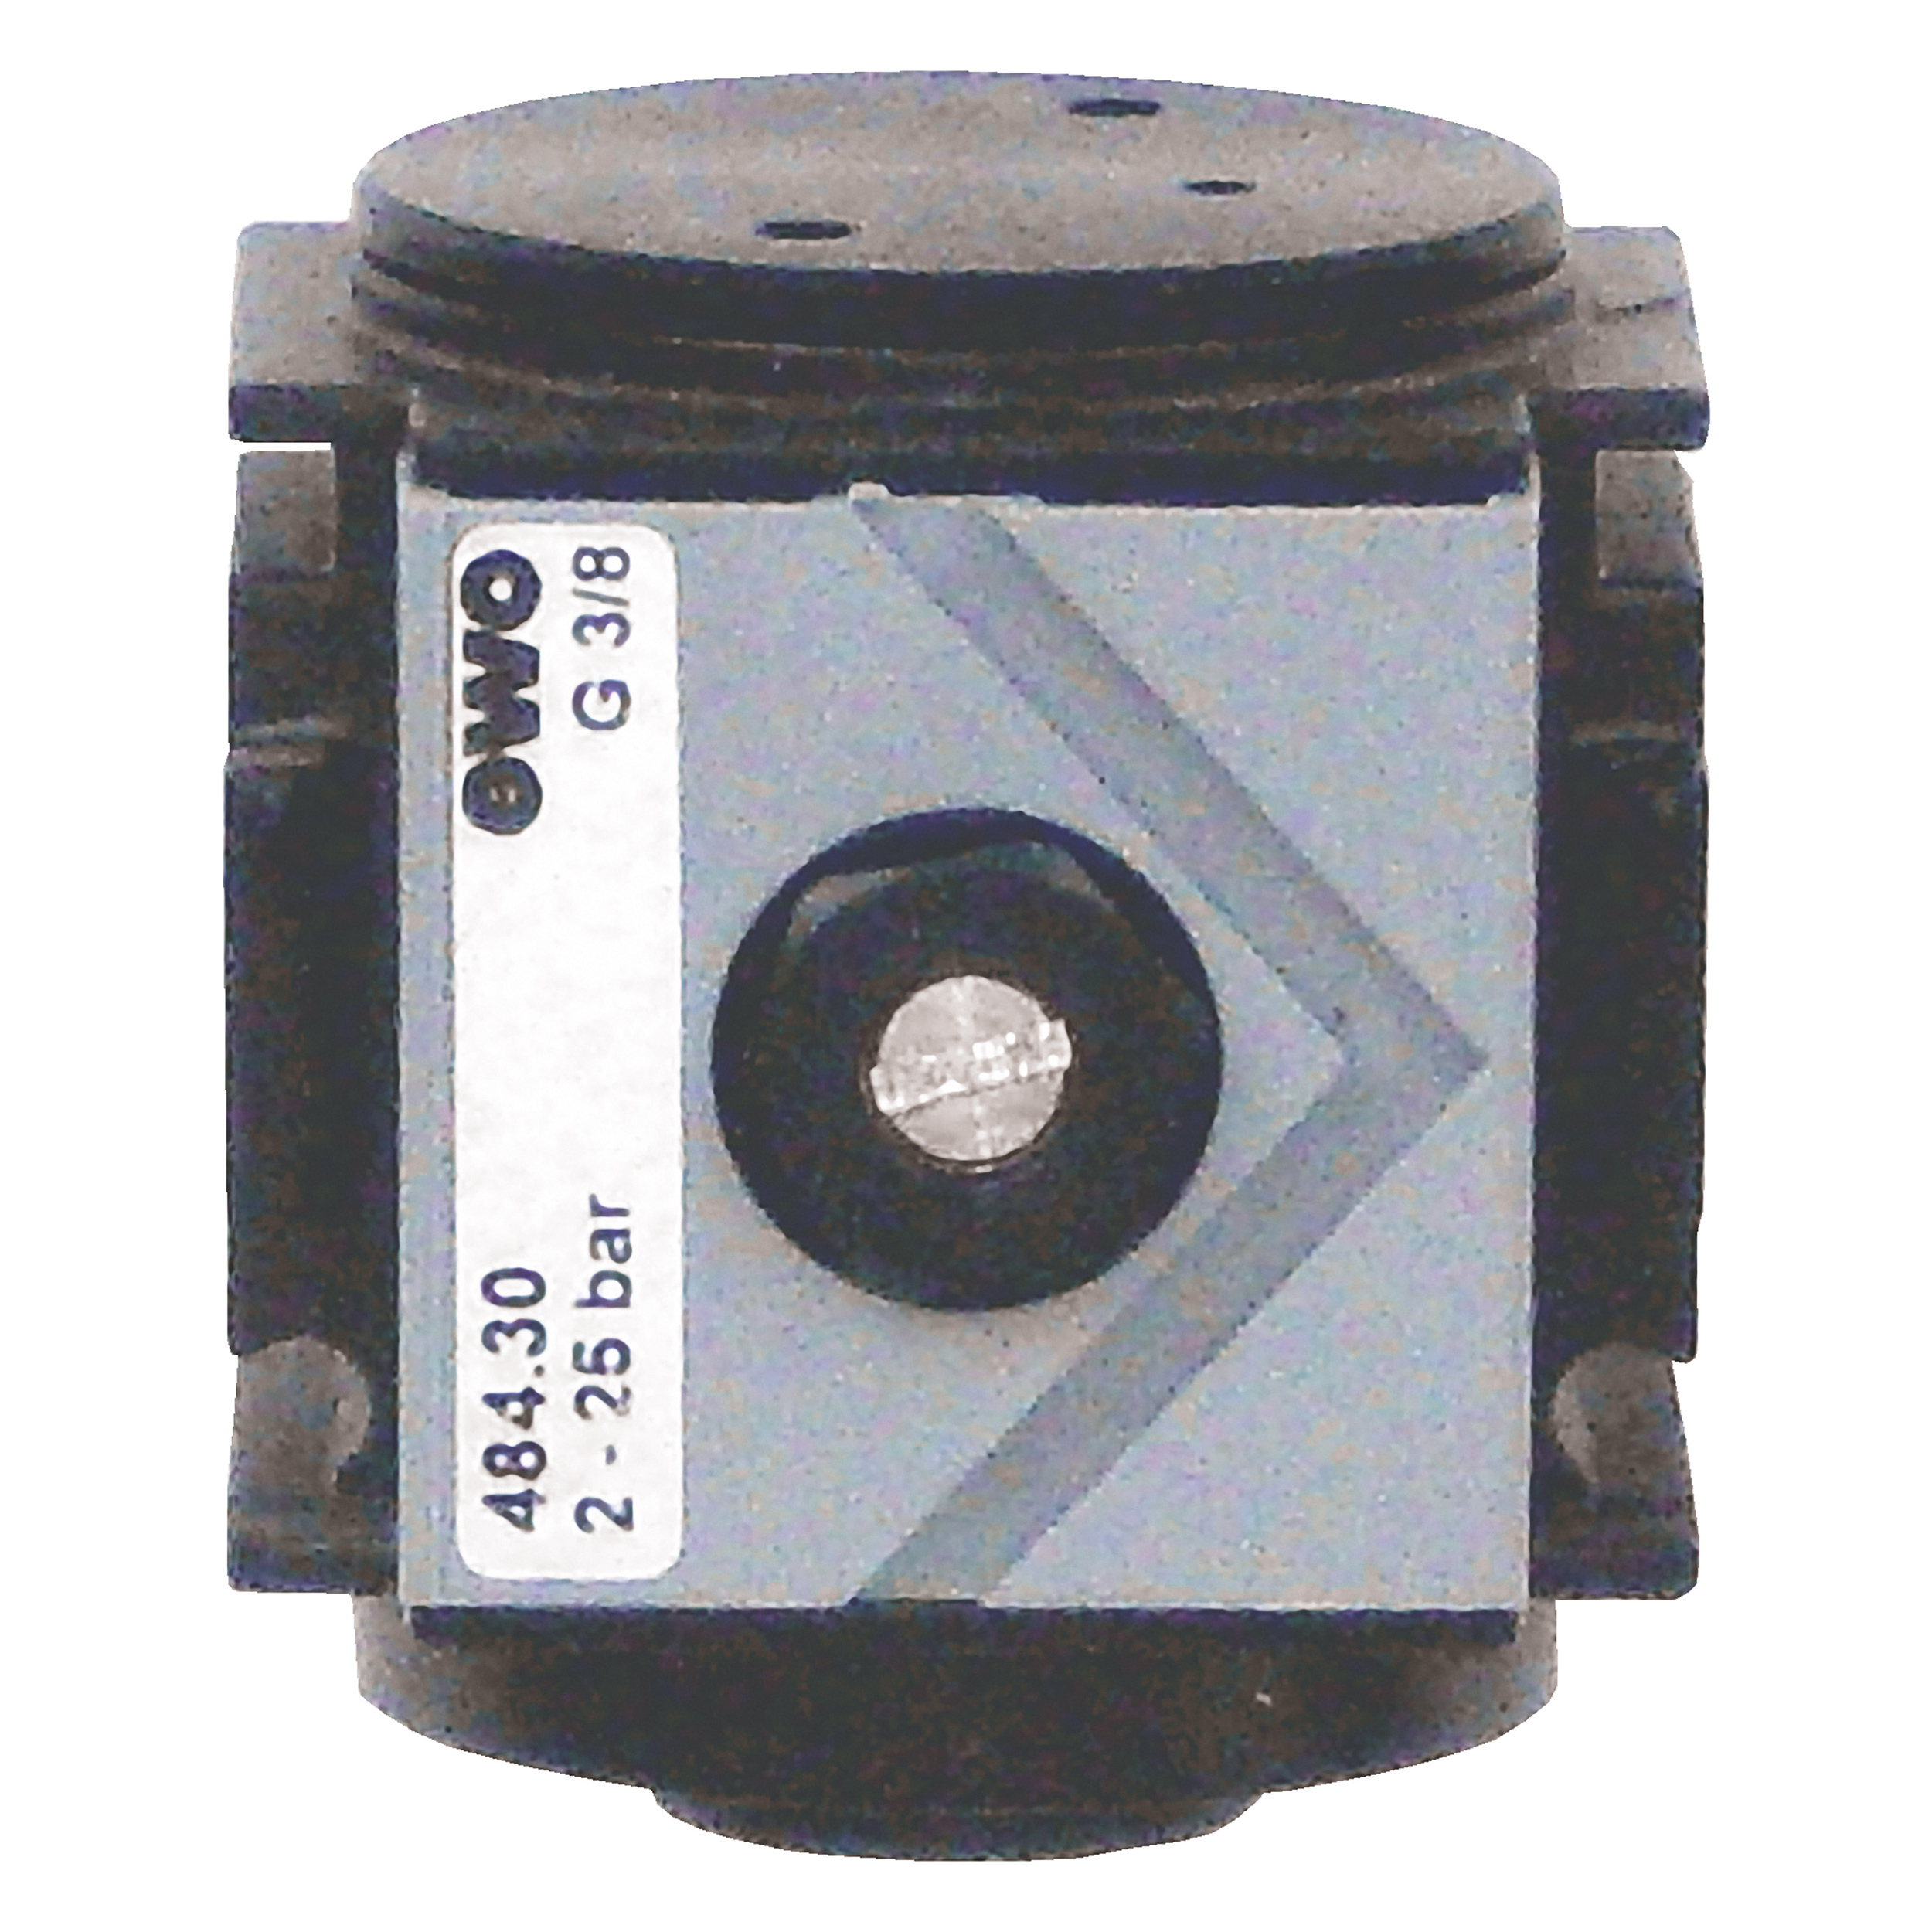 Pneumatisches Anfahrventil Typ 484 variobloc, G½, BG 40, Drossel einstellbar, Umschaltpunkt: ca. 0,6 × OP